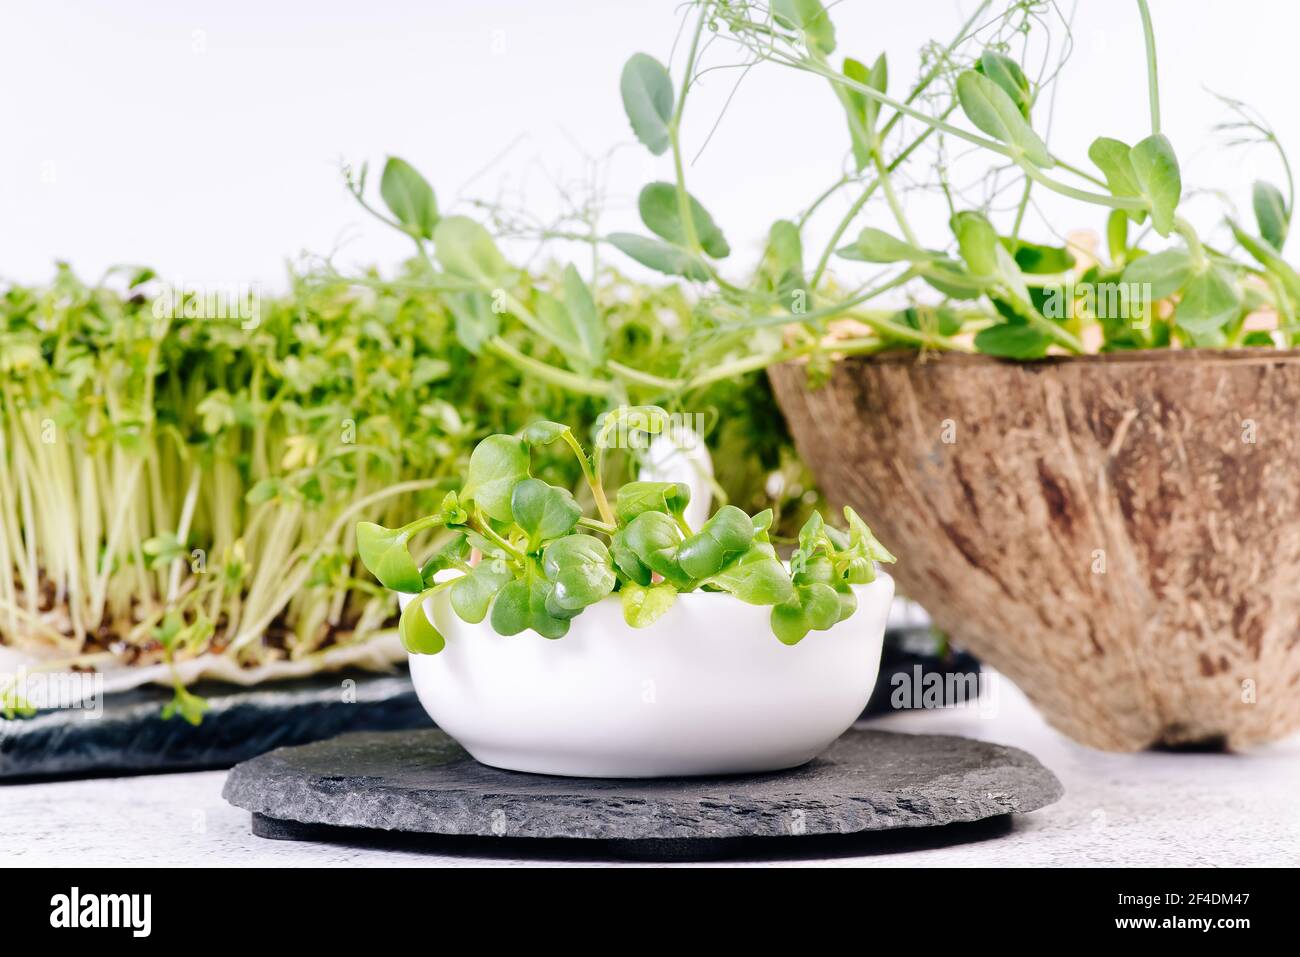 Microgreens.Fresh micro greens sur fond blanc. Salade saine. Manger bien. Concept de saine alimentation de produits frais de jardin cultivés de façon organique Banque D'Images